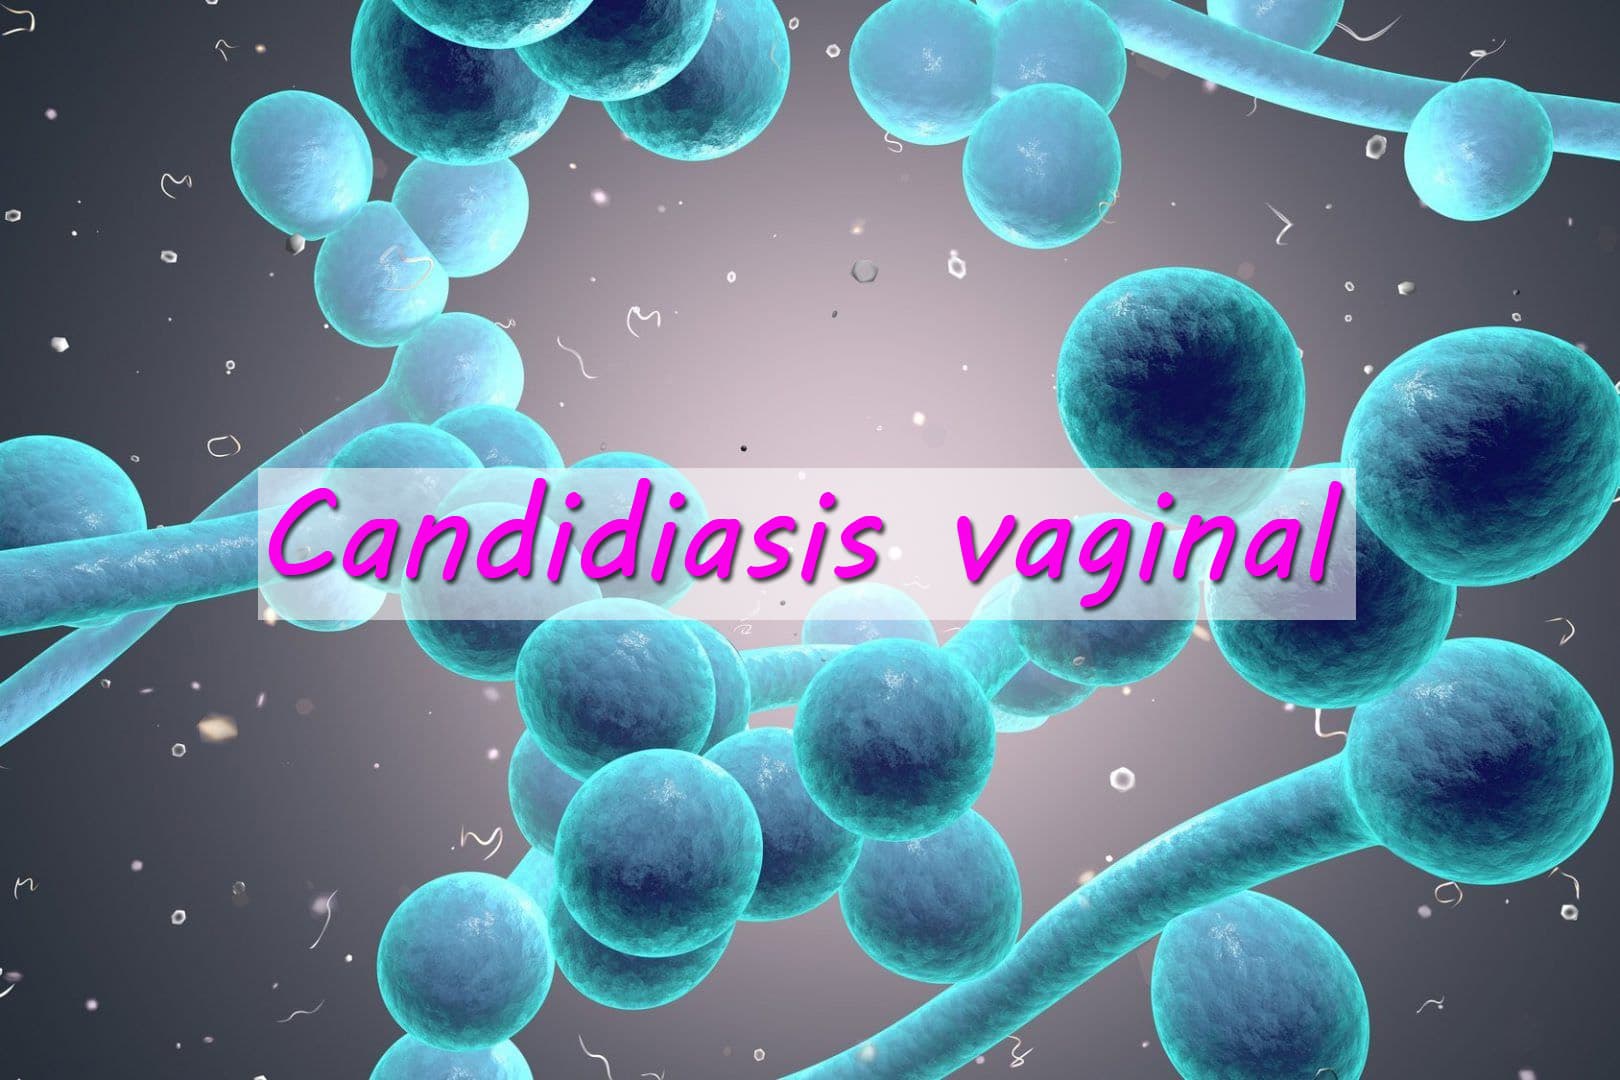 Descubiertos los mecanismos de defensa ante la infección por candidiasis vaginal